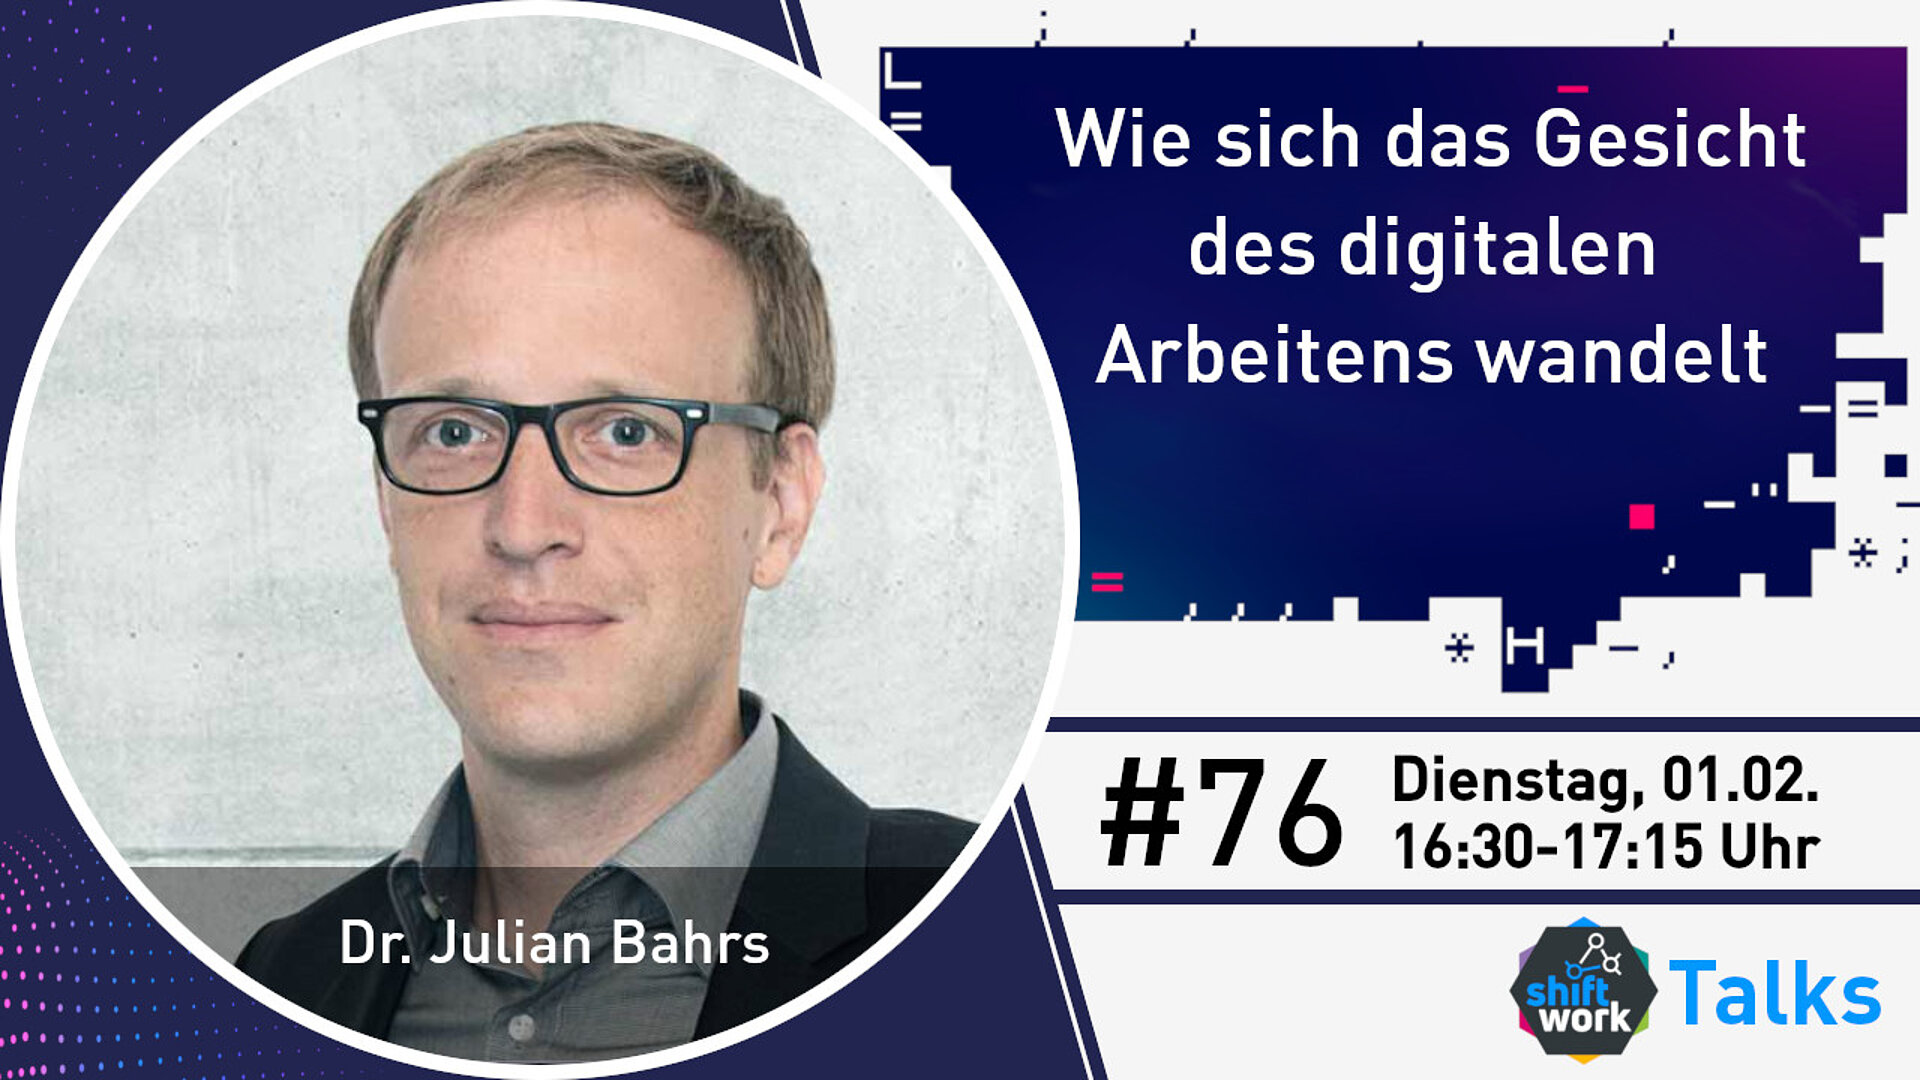 Im Gespräch mit Dr. Julian Bahrs zur Frage "Wie sich das Gesicht des digitalen Arbeitens wandelt"